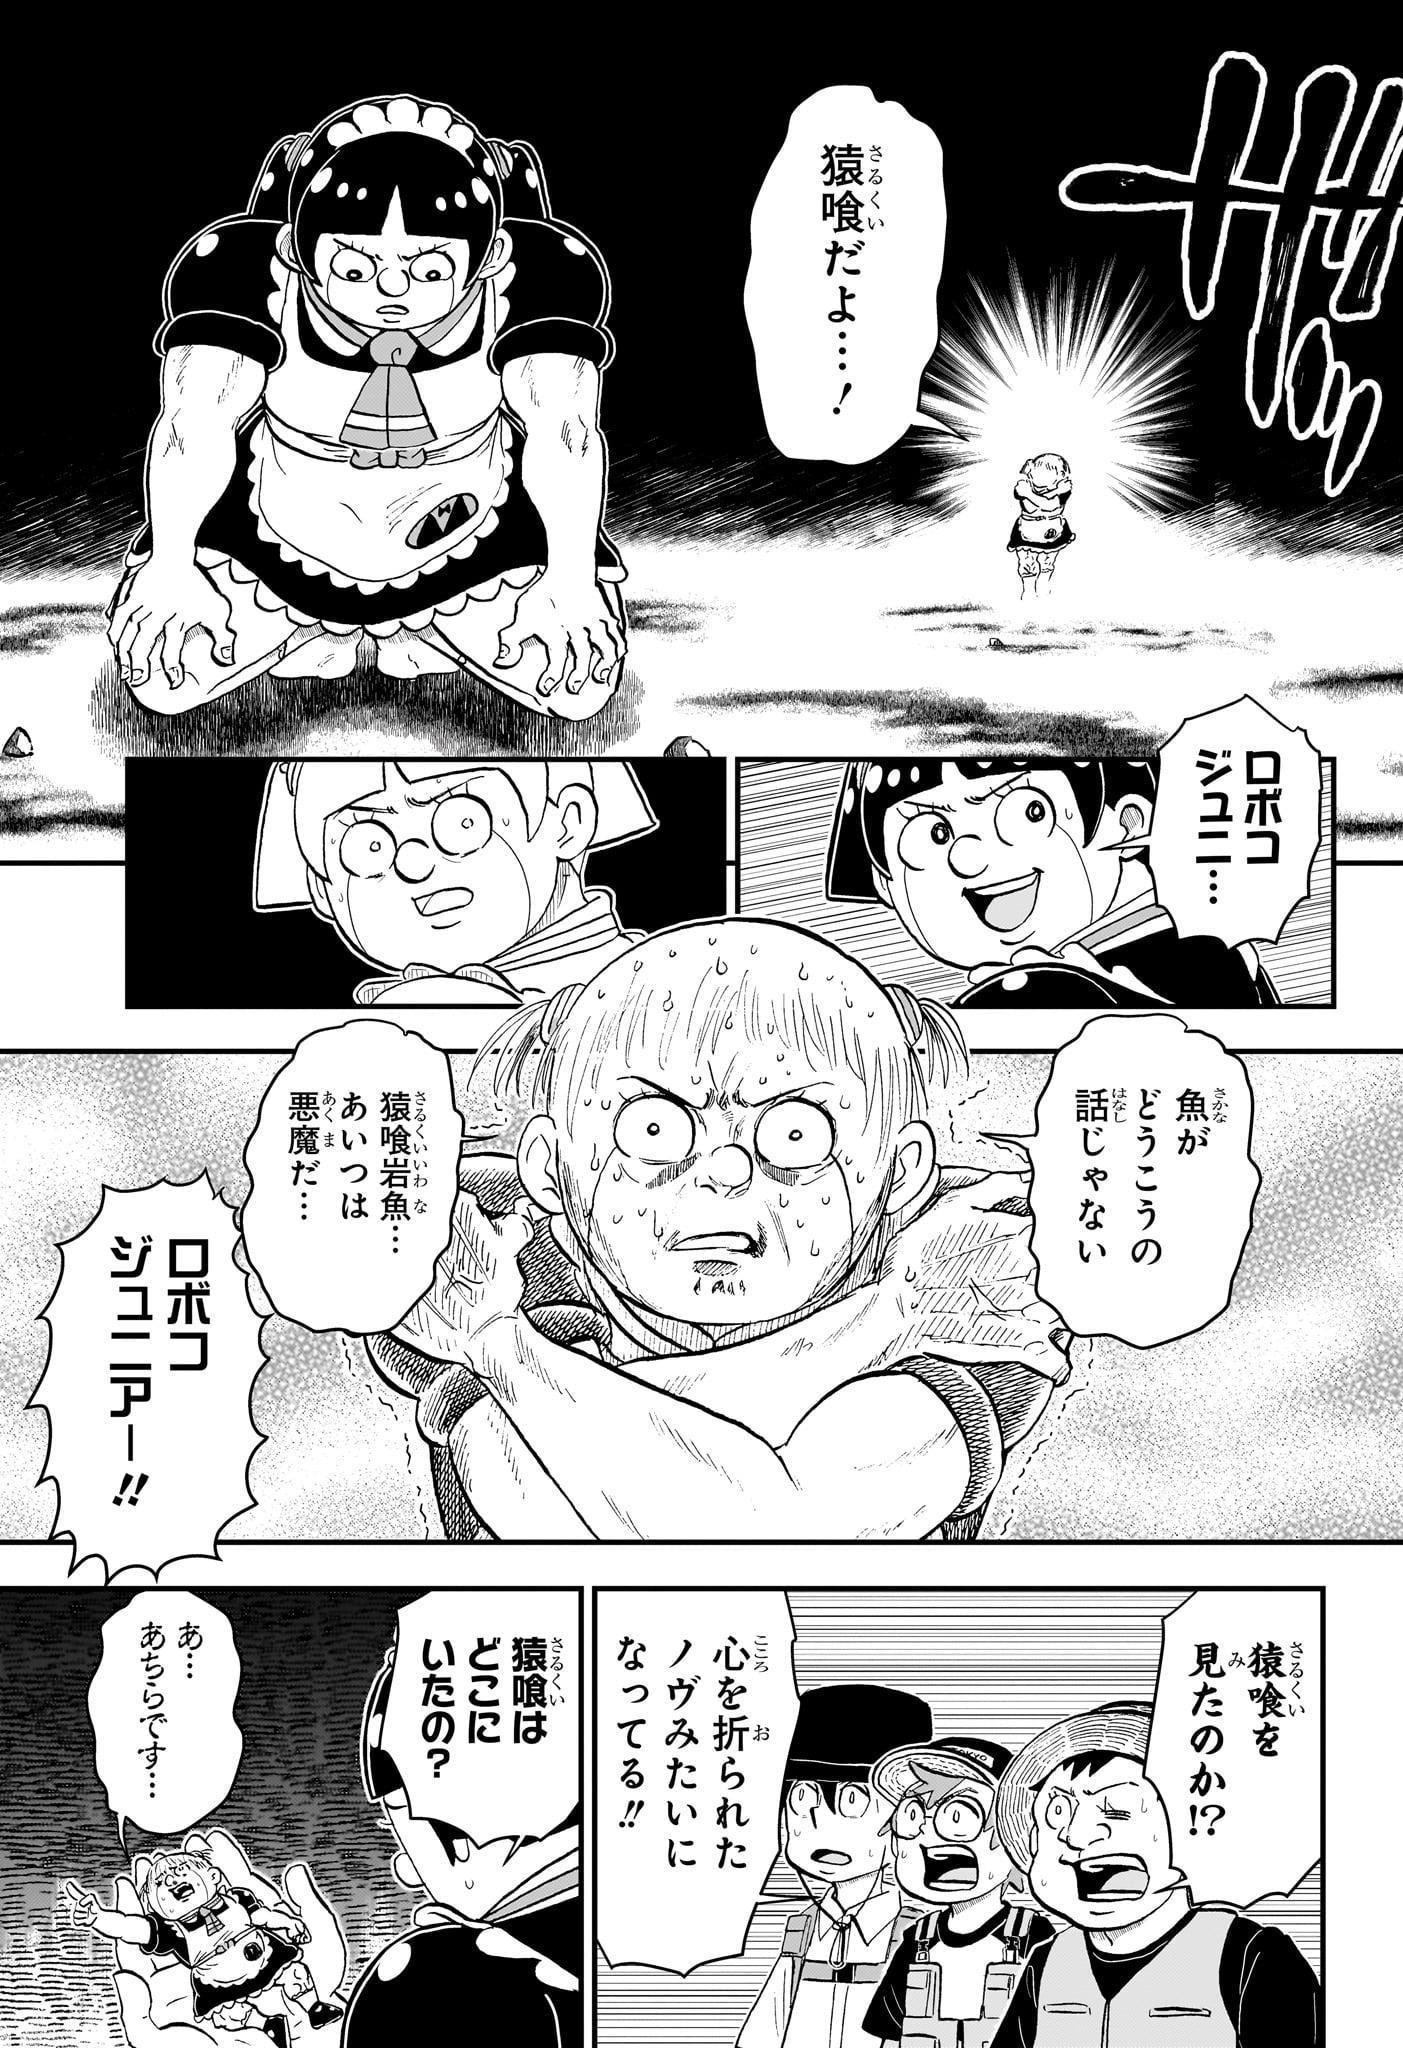 Boku to Roboko - Chapter 189 - Page 3